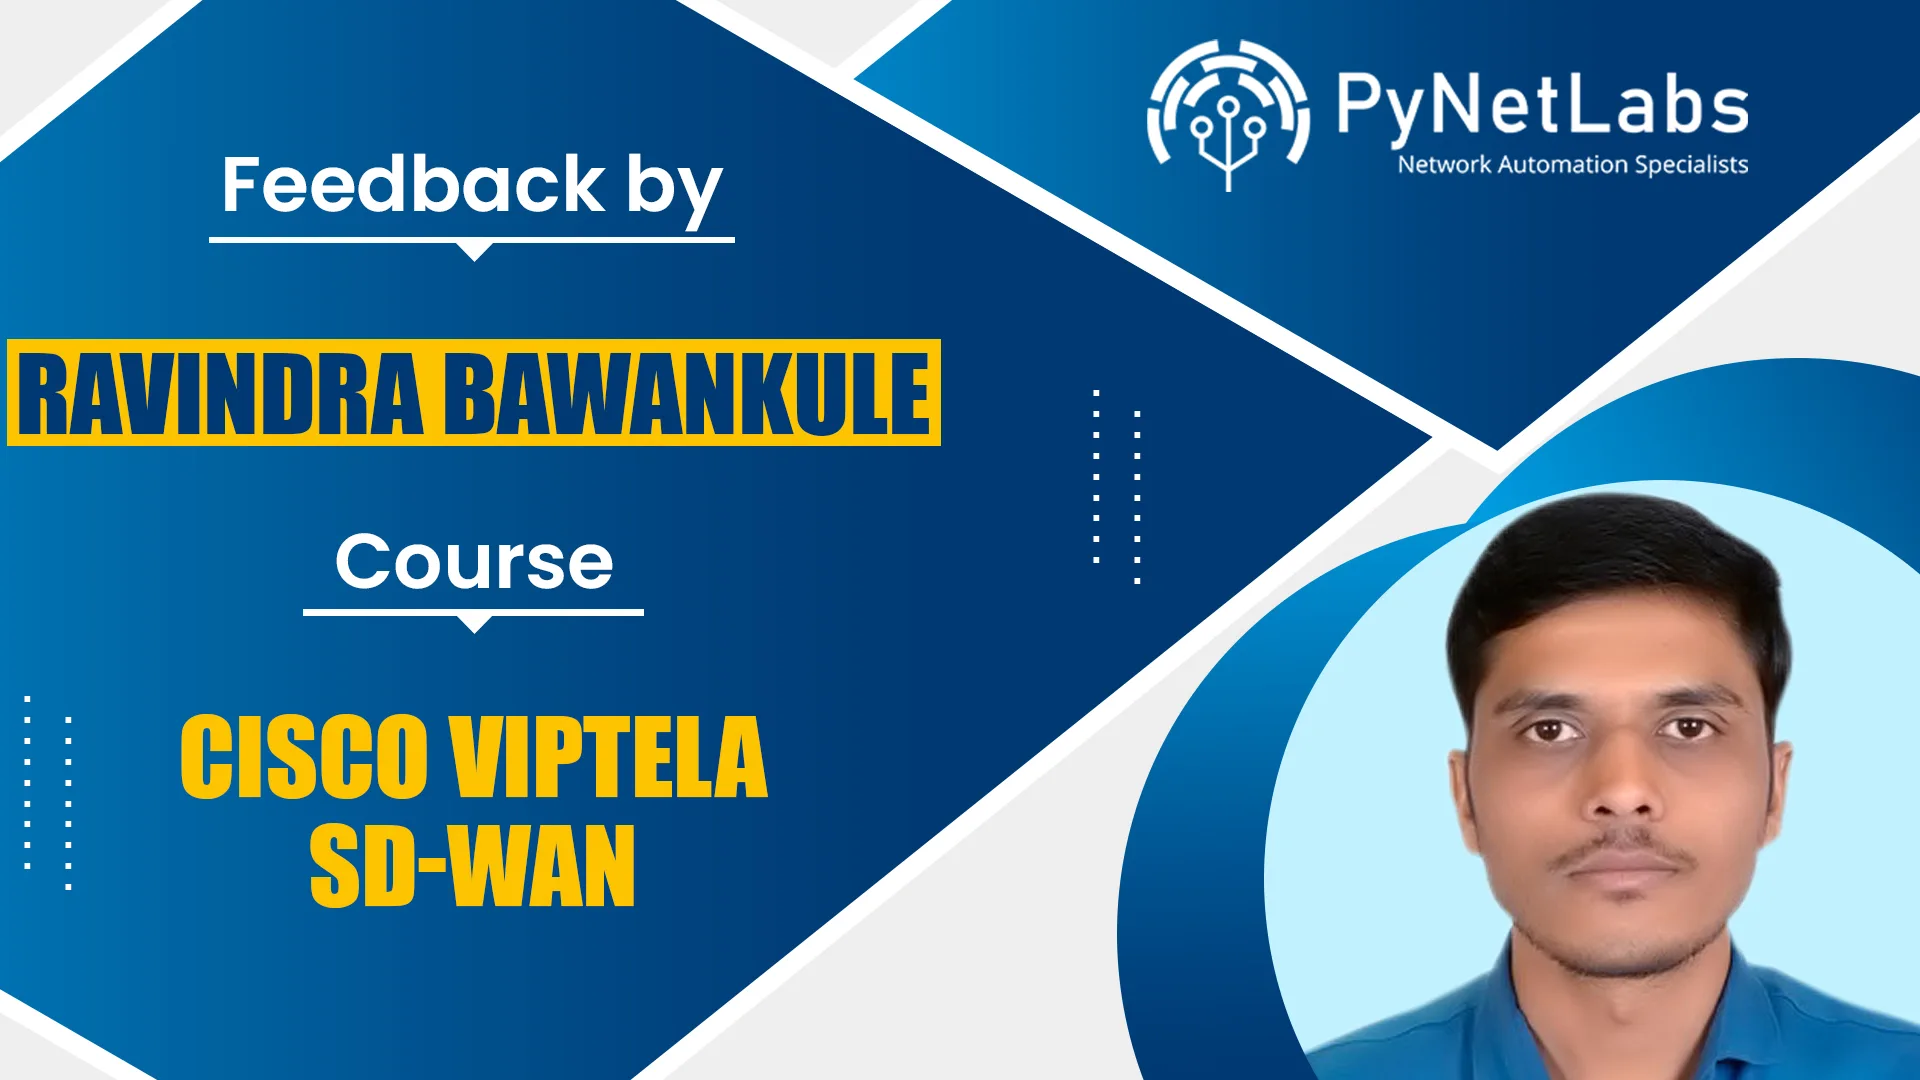 Feedback by Ravindra Bawankule for course - Cisco Viptela SD-WAN